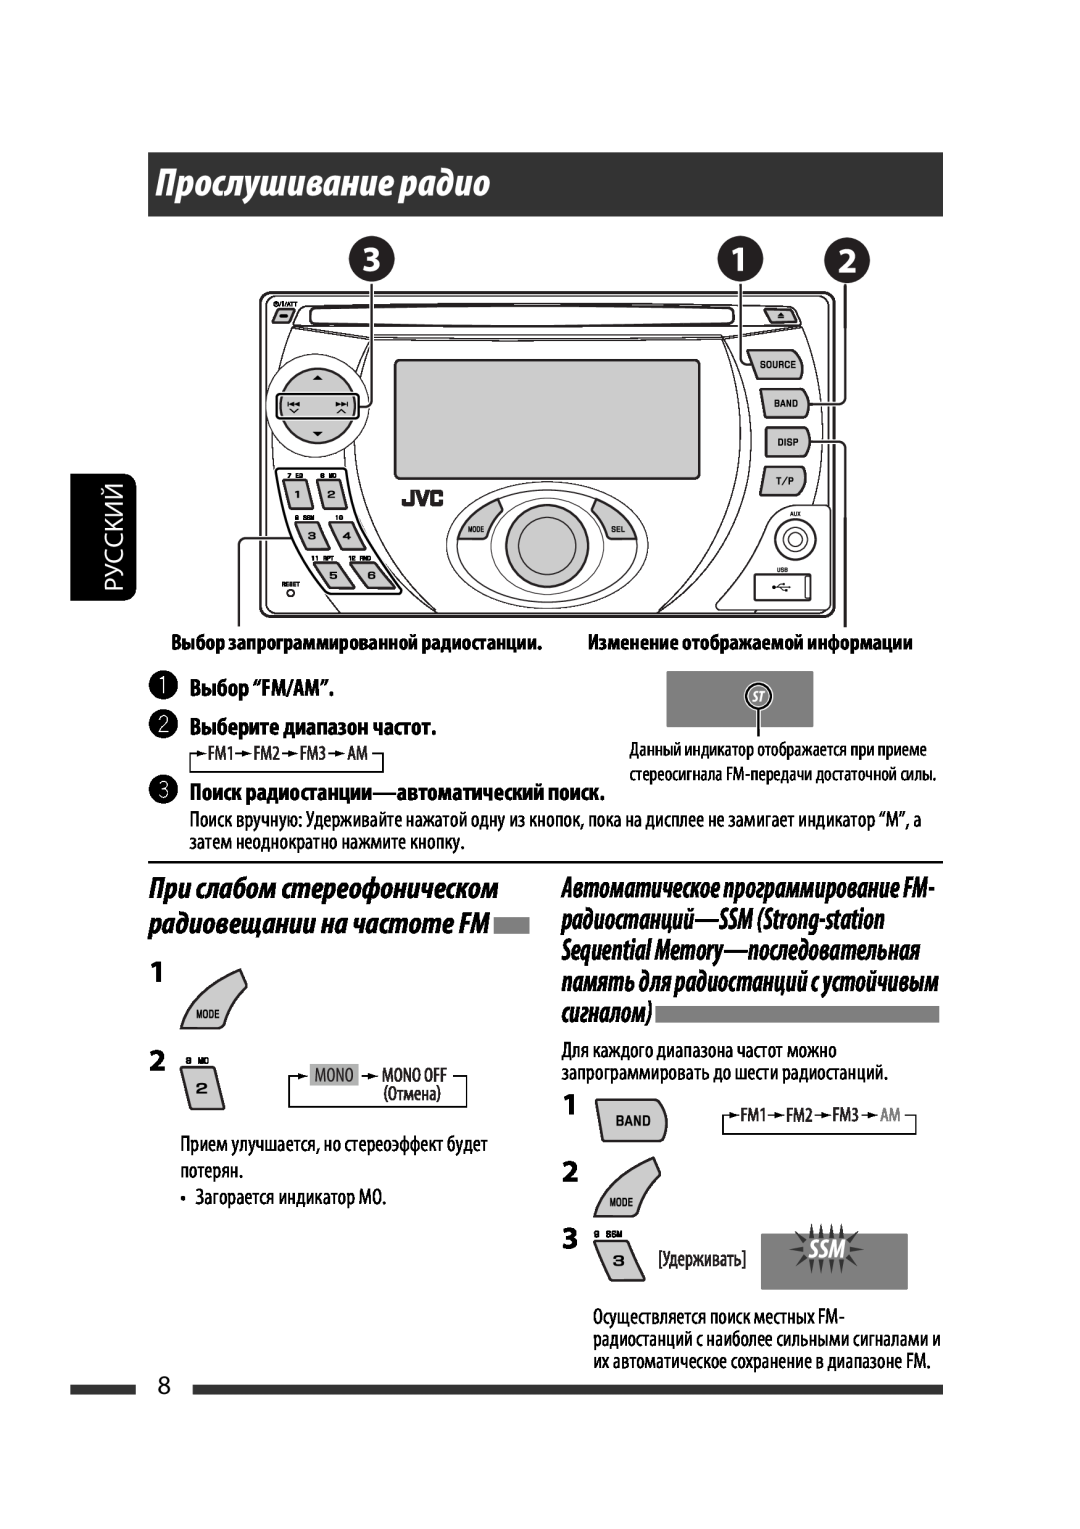 JVC KW-XG701 manual Прослушивание радио, ~Выбор “FM/AM” ŸВыберите диапазон частот, Поиск радиостанции-автоматическийпоиск 